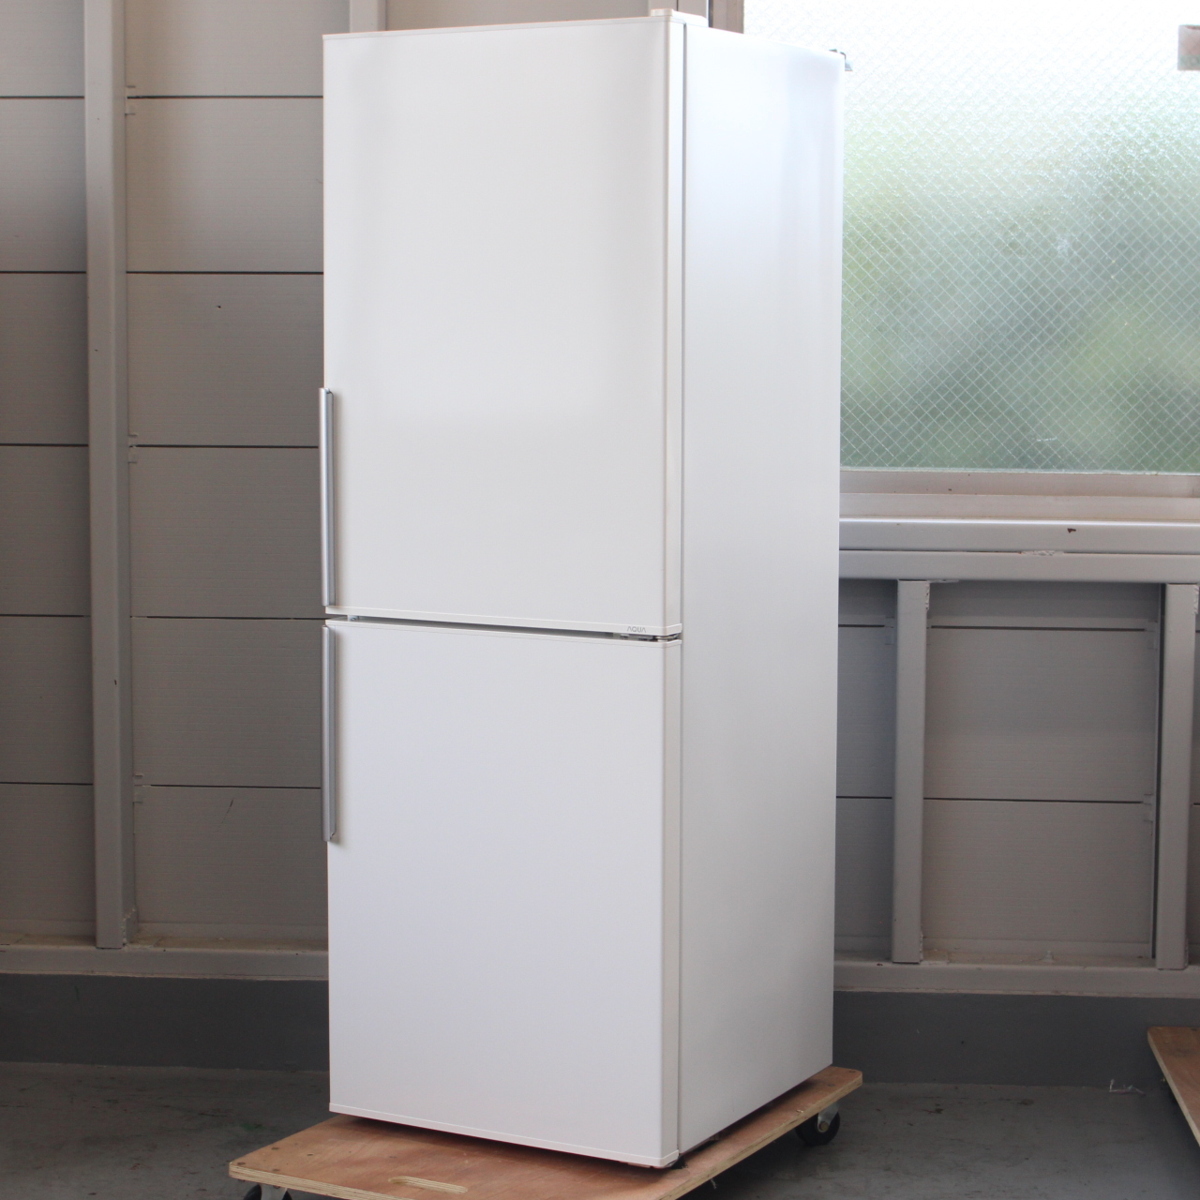 アクア ノンフロン冷凍冷蔵庫 AQR-D28E(W) 275L 2016年製 2ドア